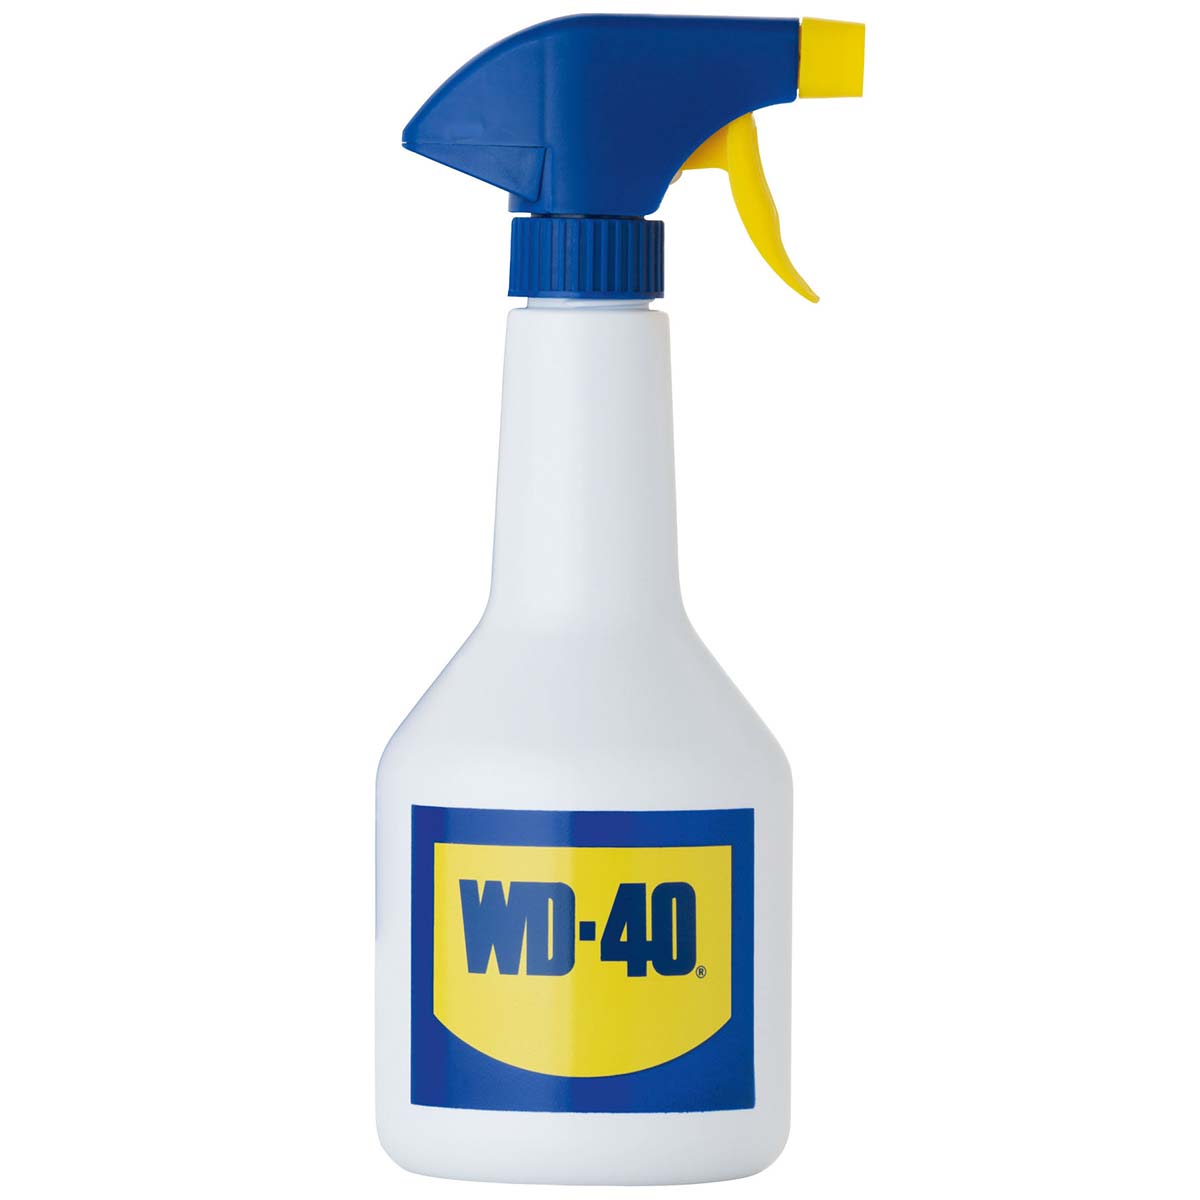 WD-40 lubrificante multiuso nebulizzatore